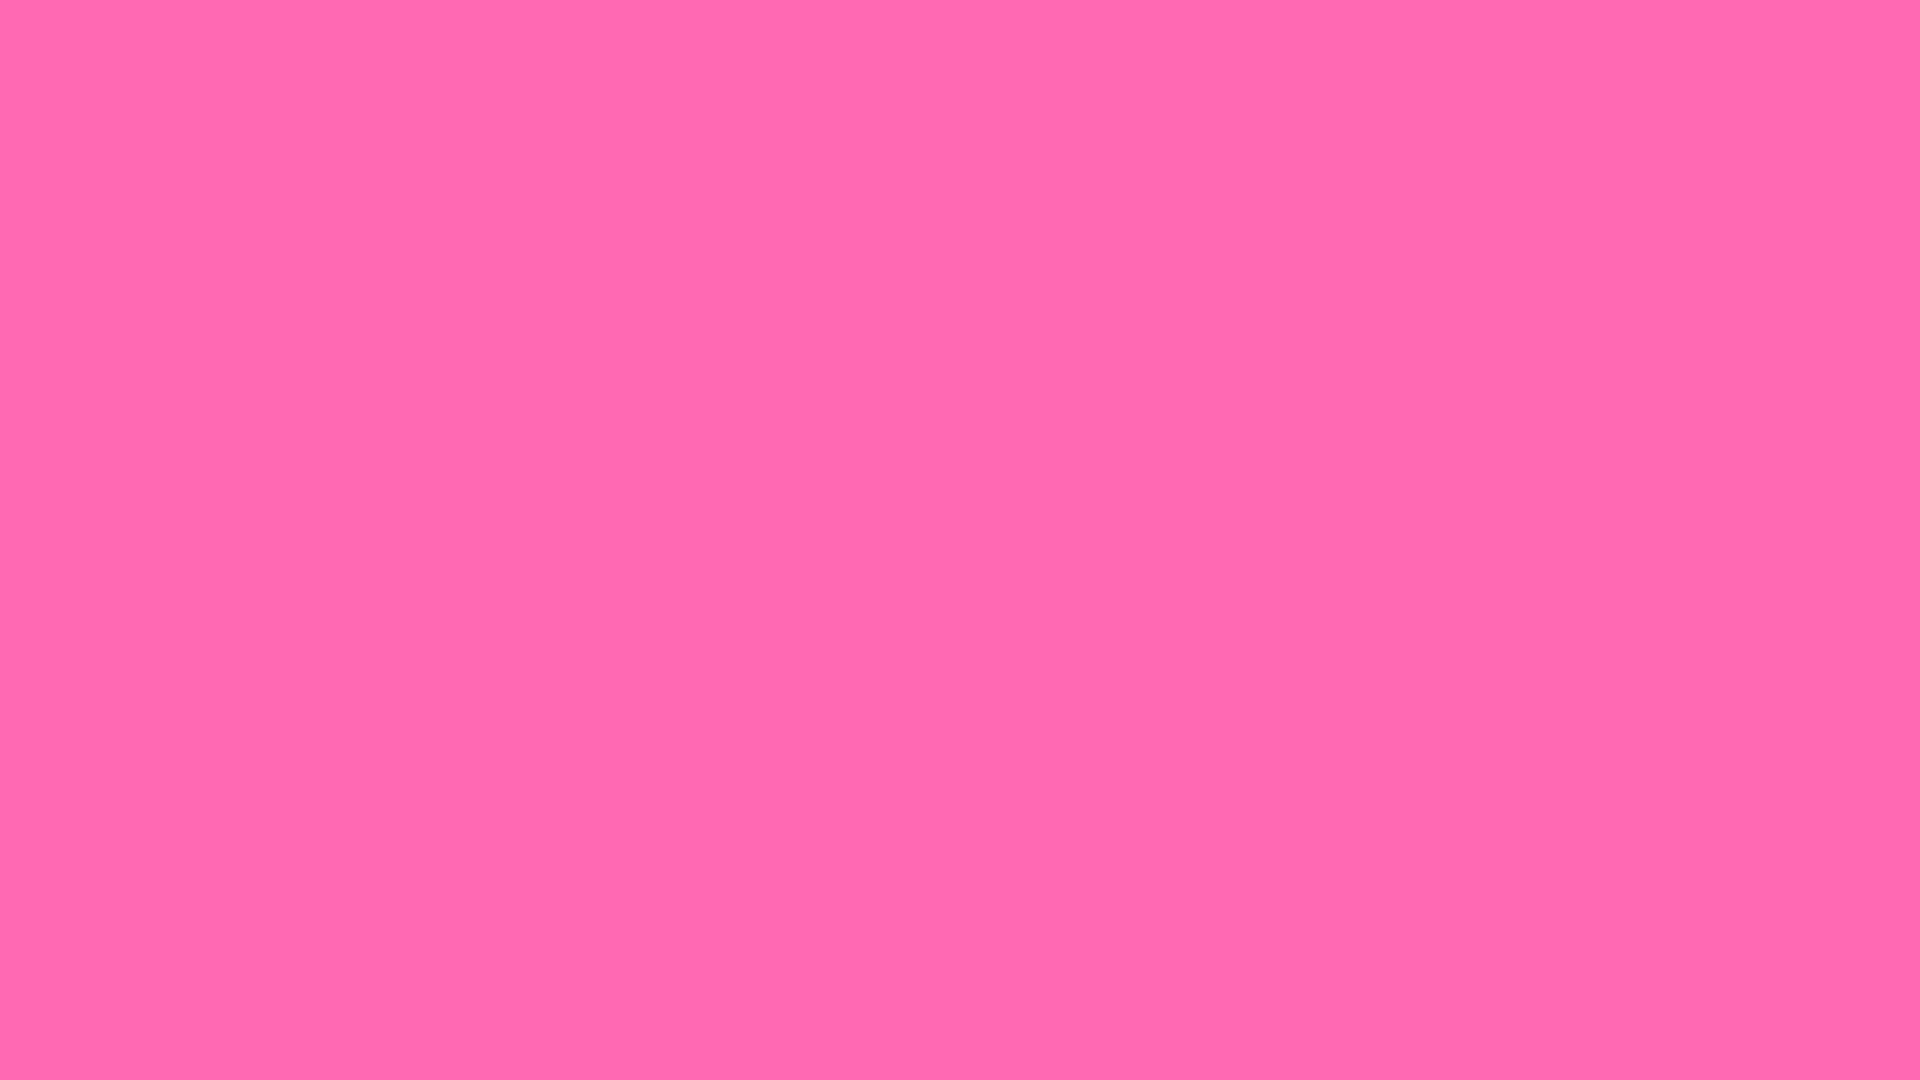 Màu hồng là sự lựa chọn hoàn hảo cho một hình nền sáng tạo và duyên dáng. Hình ảnh phía trên sẽ tạo nên một làn sóng sáng tạo với mẫu nền màu hồng đơn sắc này.